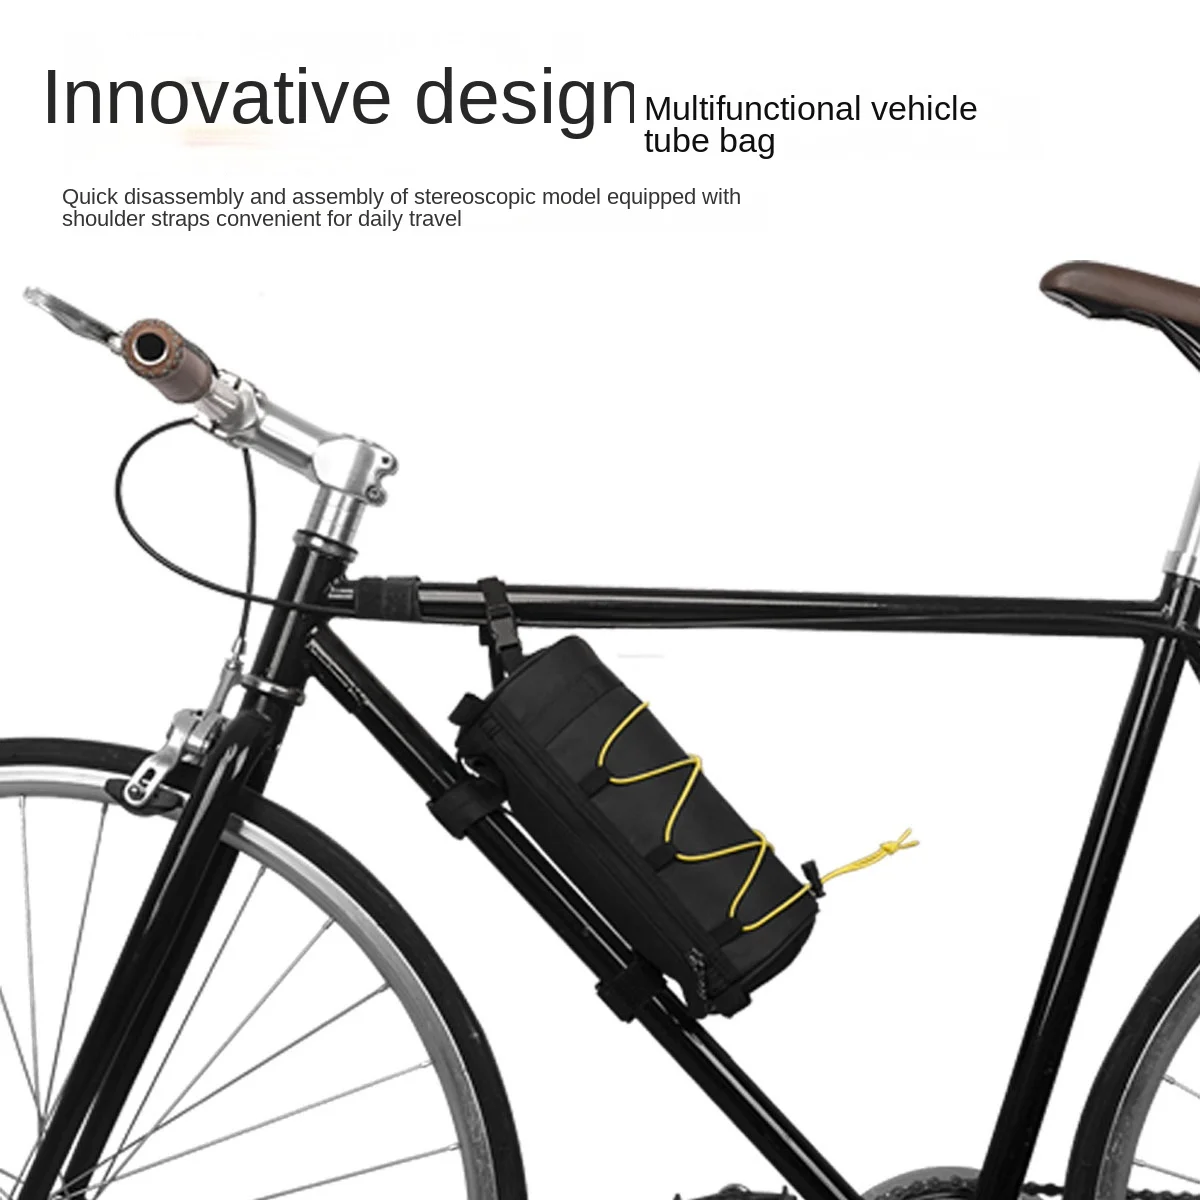 Аксессуары для велосипеда Аксессуары для велосипеда, Фурнитура, Передняя сумка для хлеба, Аксессуары для велосипеда, Универсальная упаковка для мото-велоспорта Изображение 1 